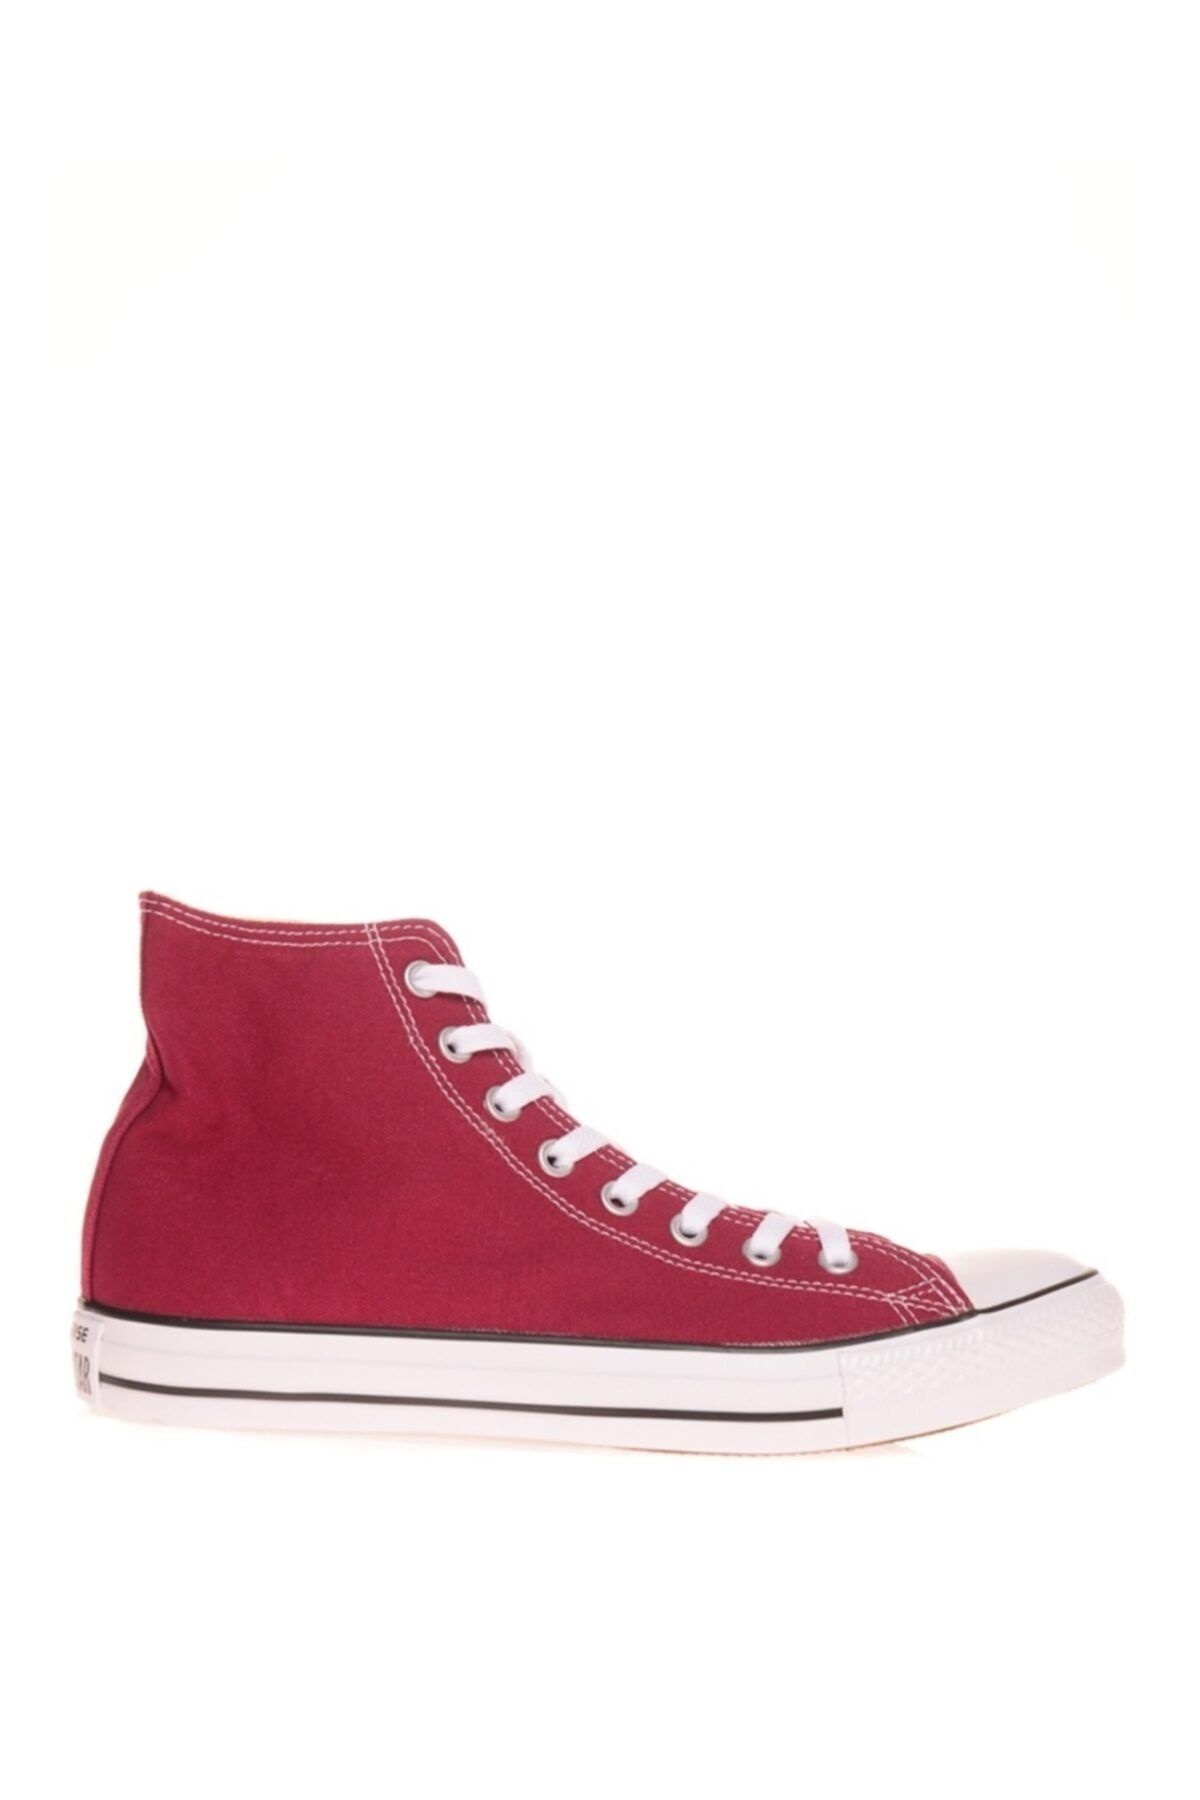 Converse Kadın Kırmızı Sneaker Ayakkabı